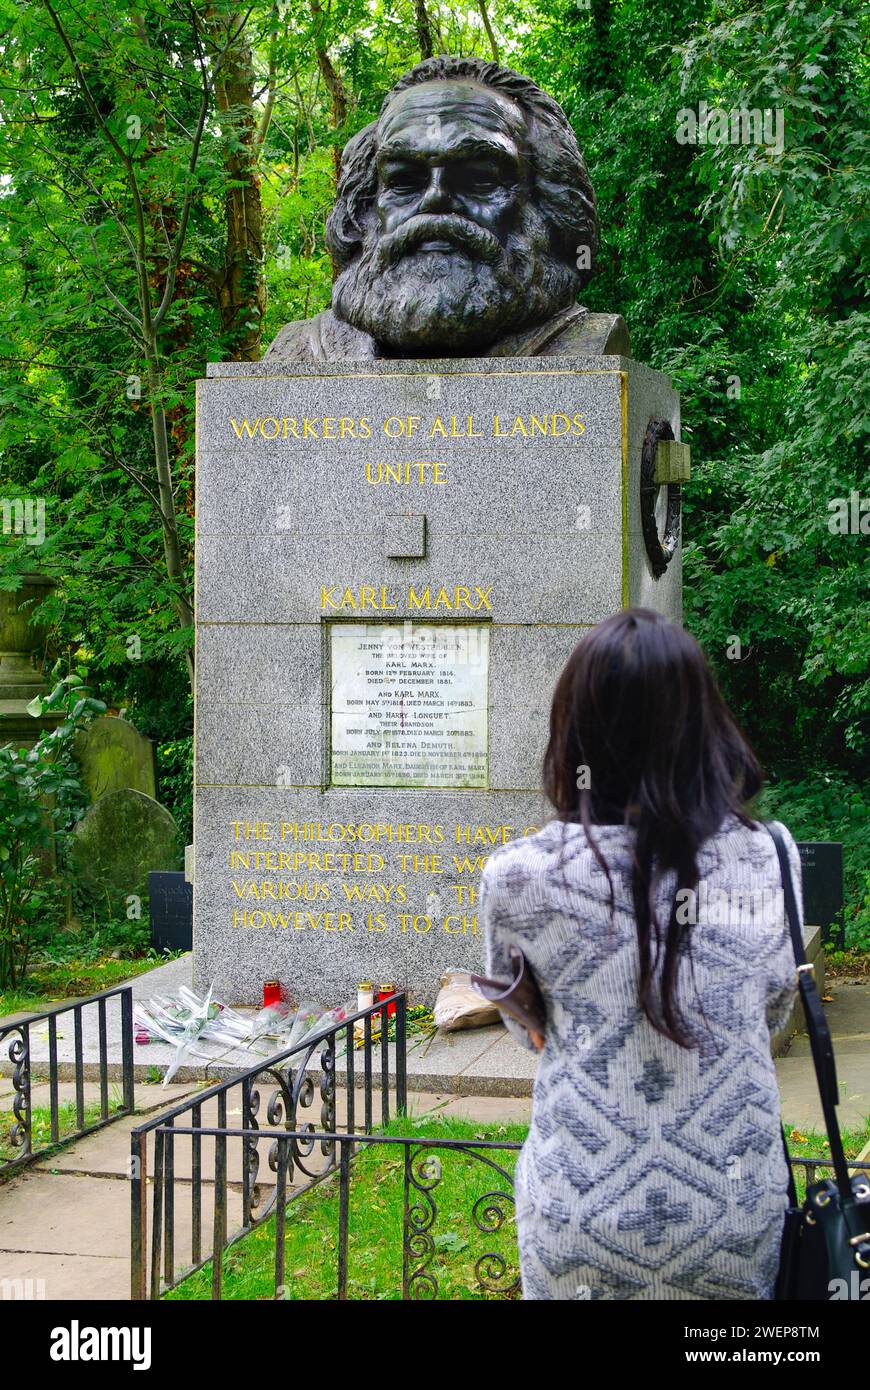 London: Am Grab von Karl Marx. - Eine junge Frau steht auf dem Highgate-Friedhof in London mit erhobener Faust neben der gepflegten Grabstätte von Kar Stock Photo